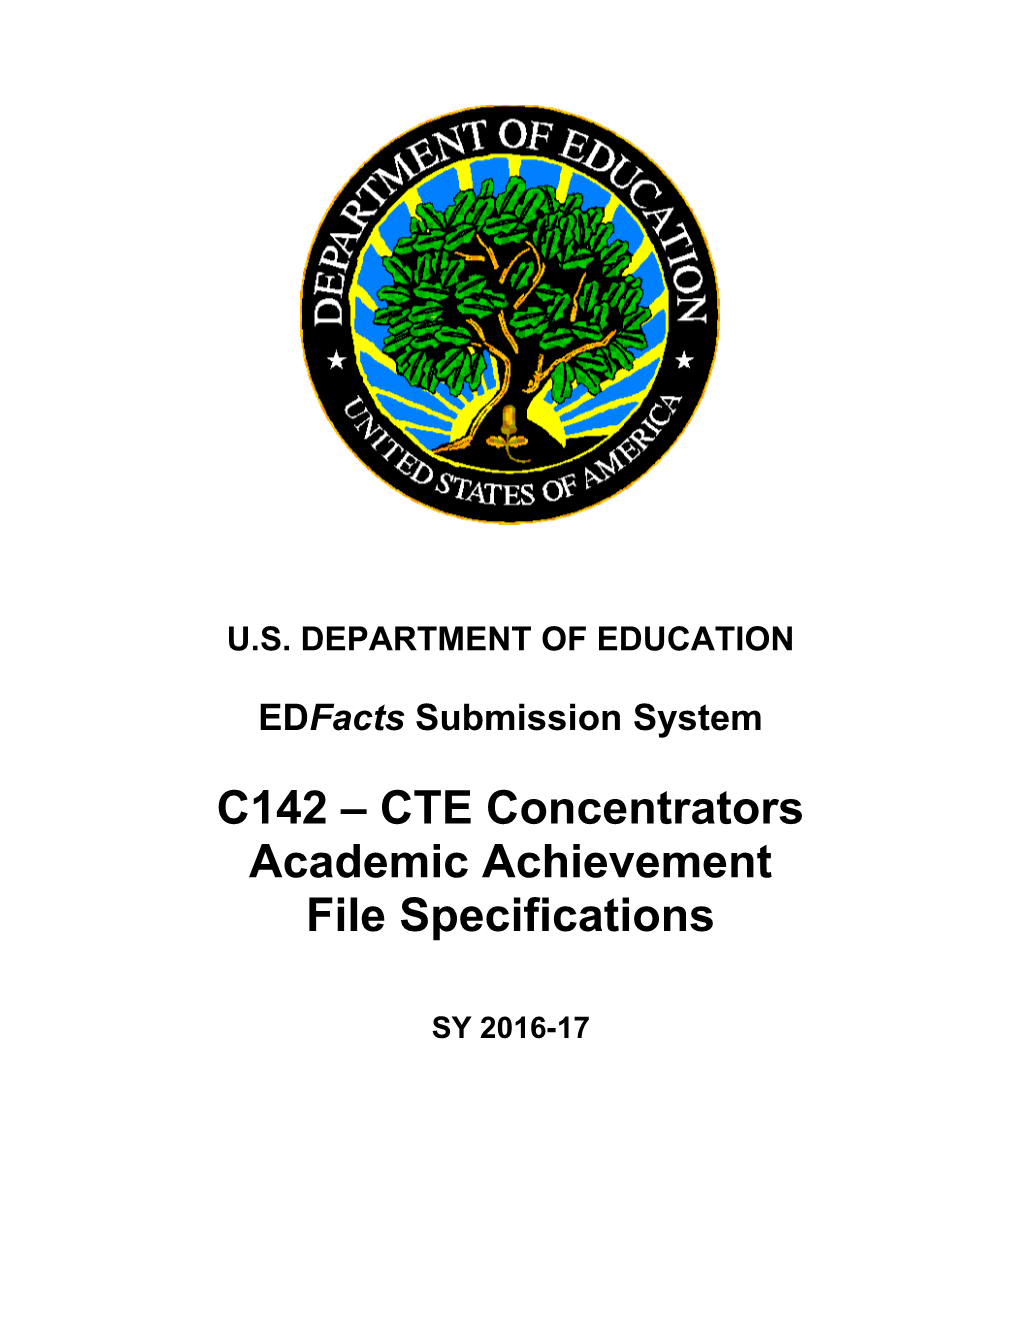 C142 CTE Concentrators Academic Achievement File Specifications (Msword)